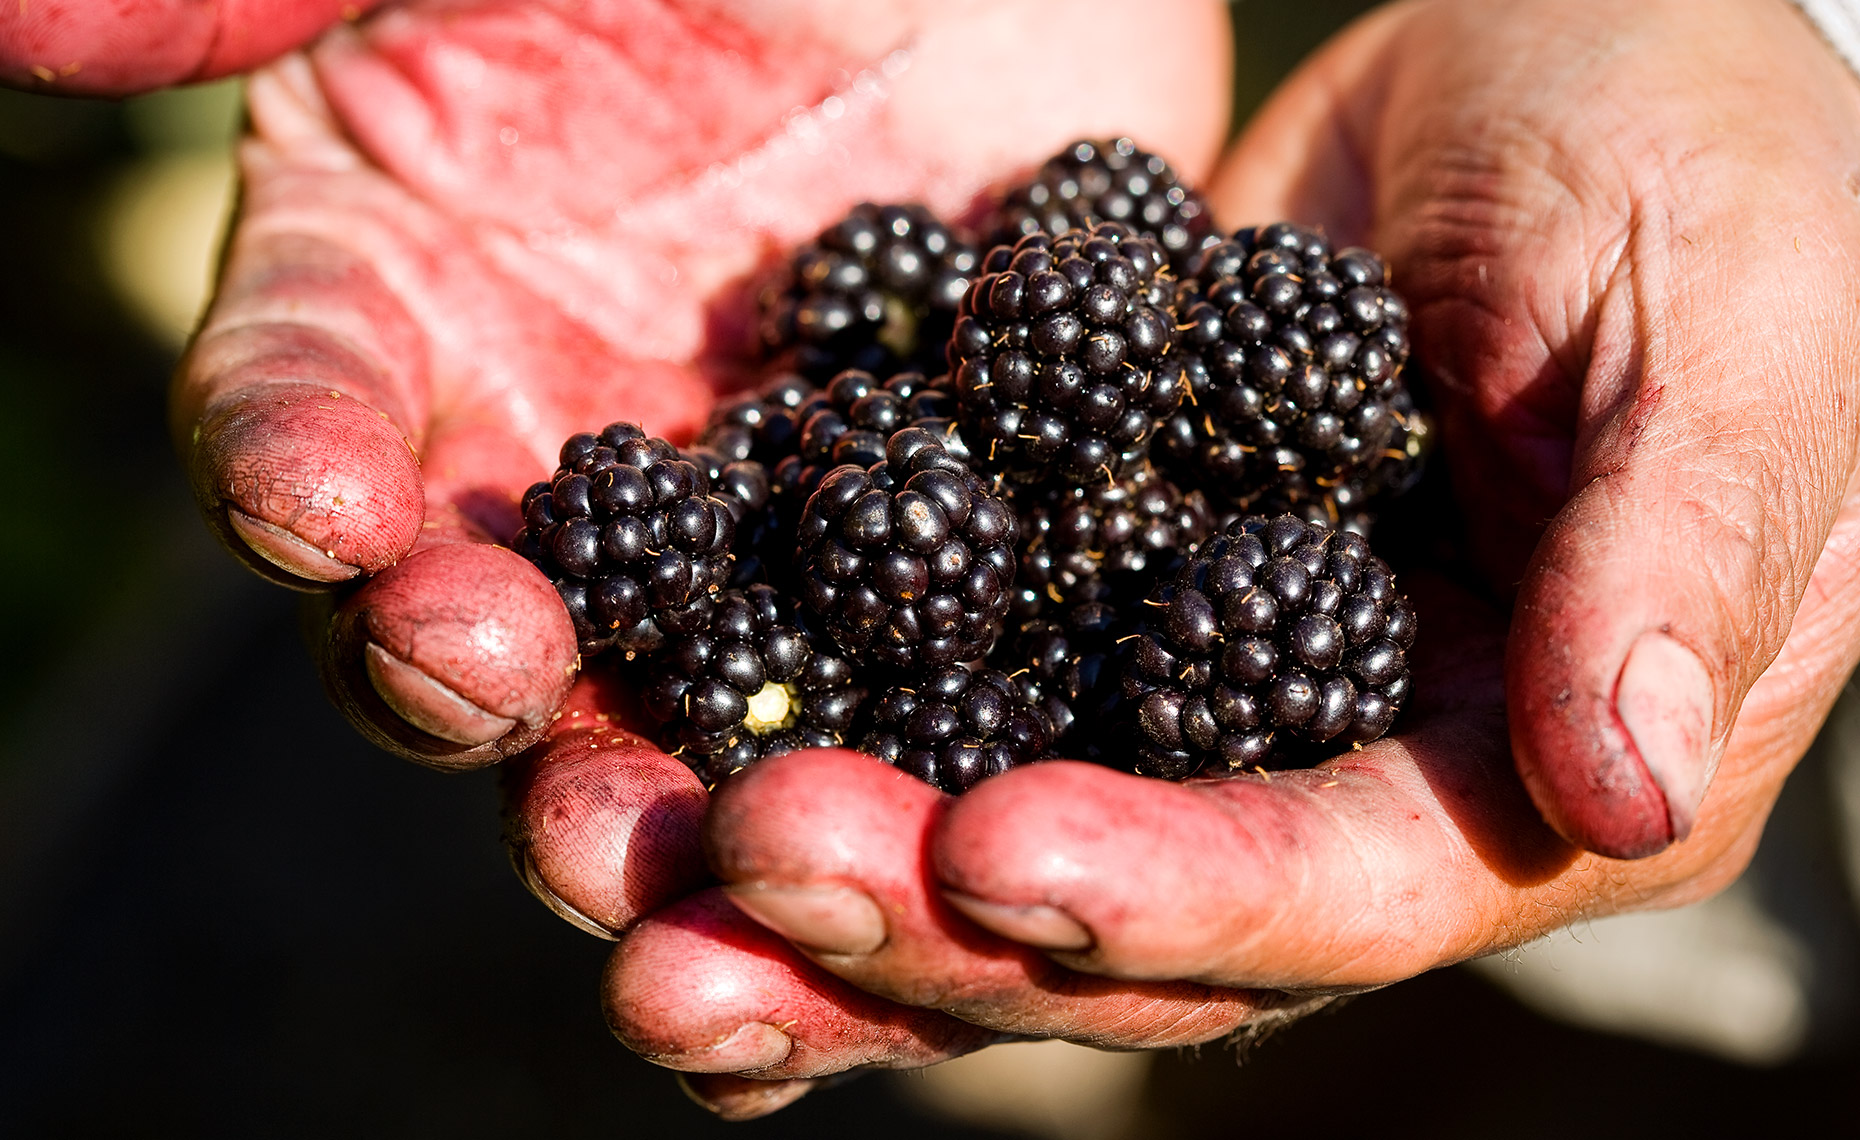 Hand holding fresh picked blackberries